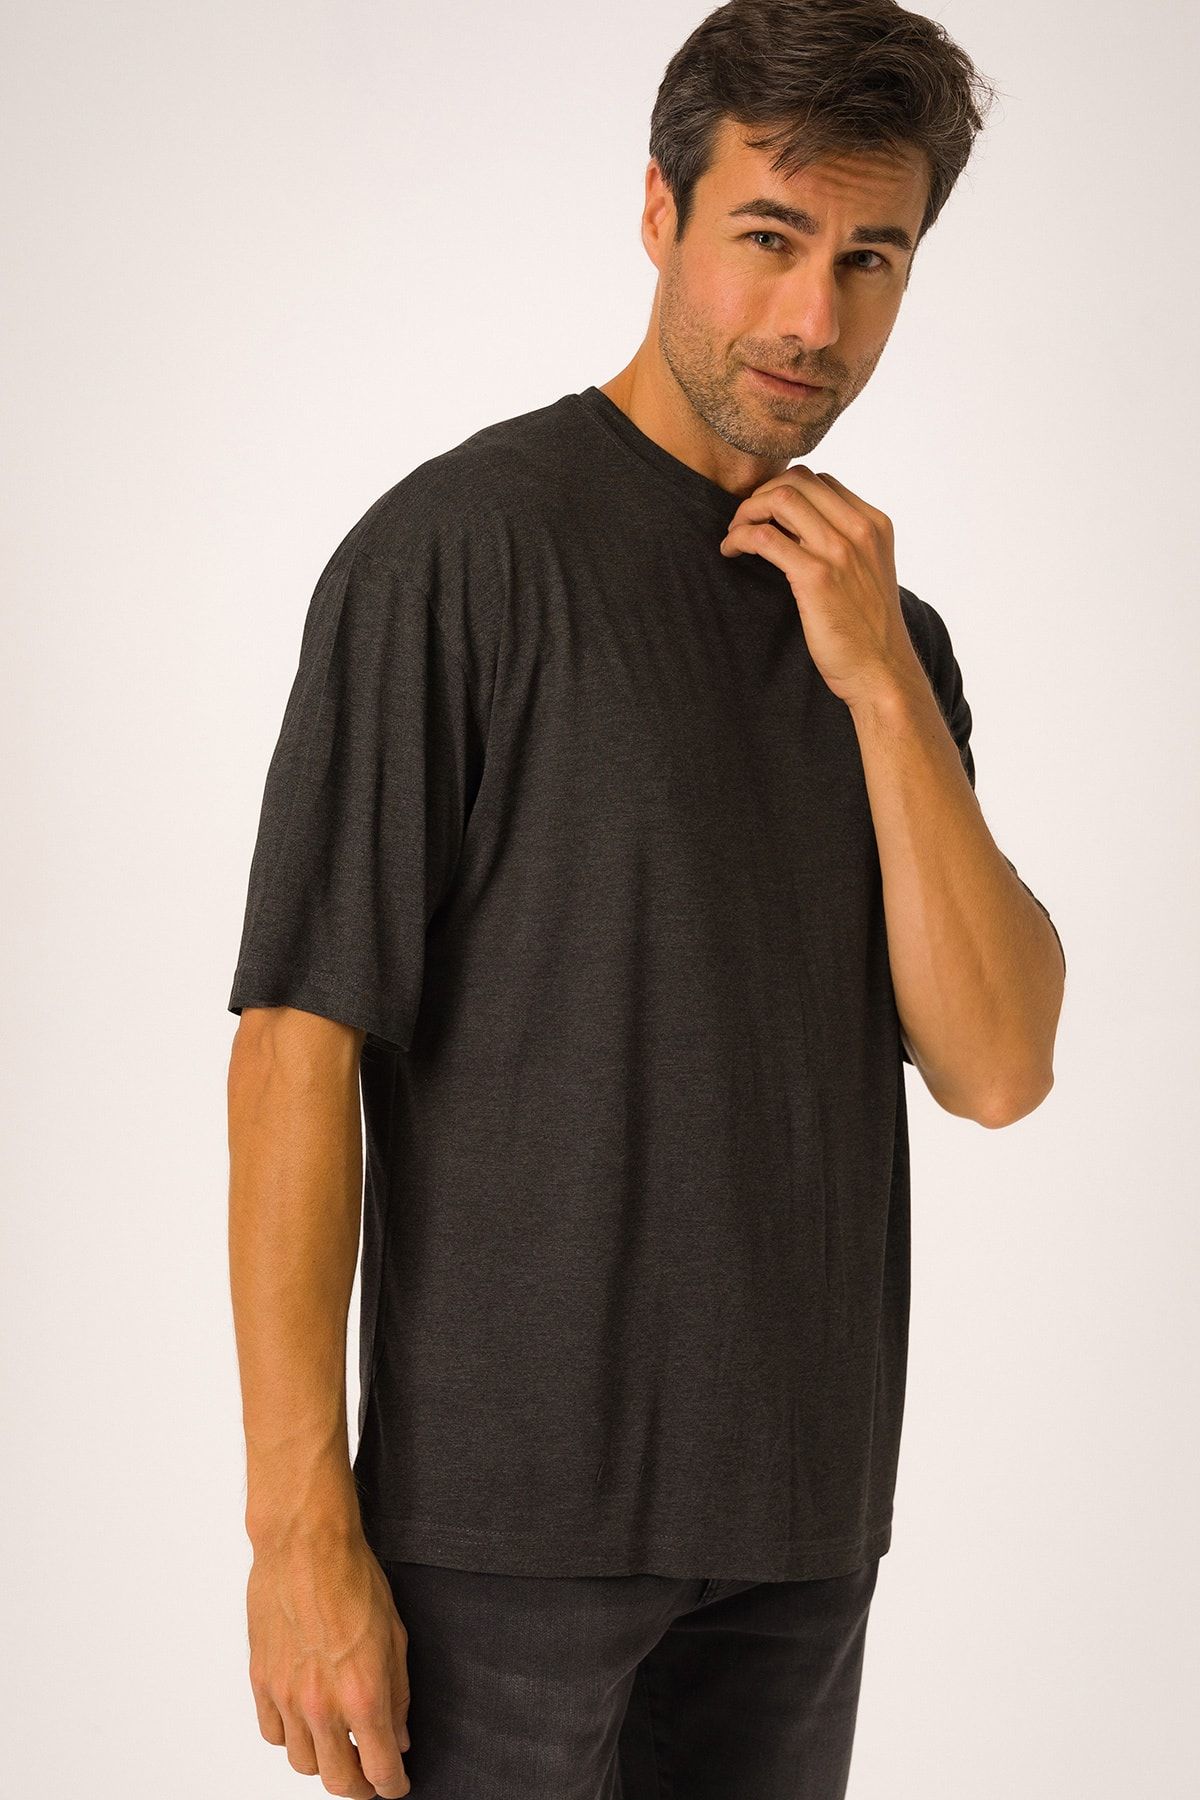 Runever Antrasit Oversize Yuvarlak Yaka Basıc Erkek T-shirt 22187